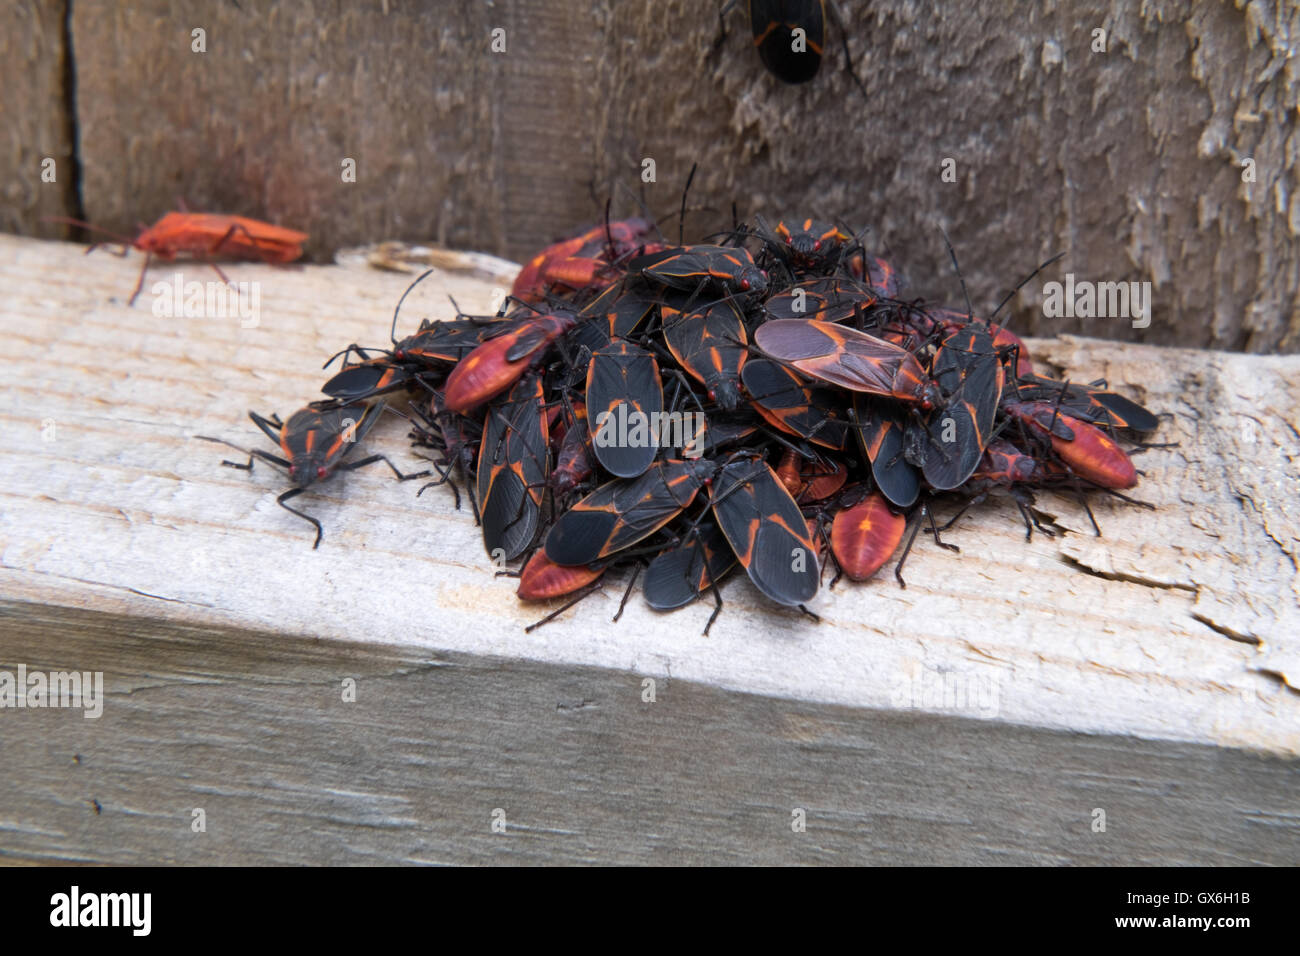 Schwarm von Box Elder bugs Schwarm auf einer Schiene Holzzaun. Stockfoto